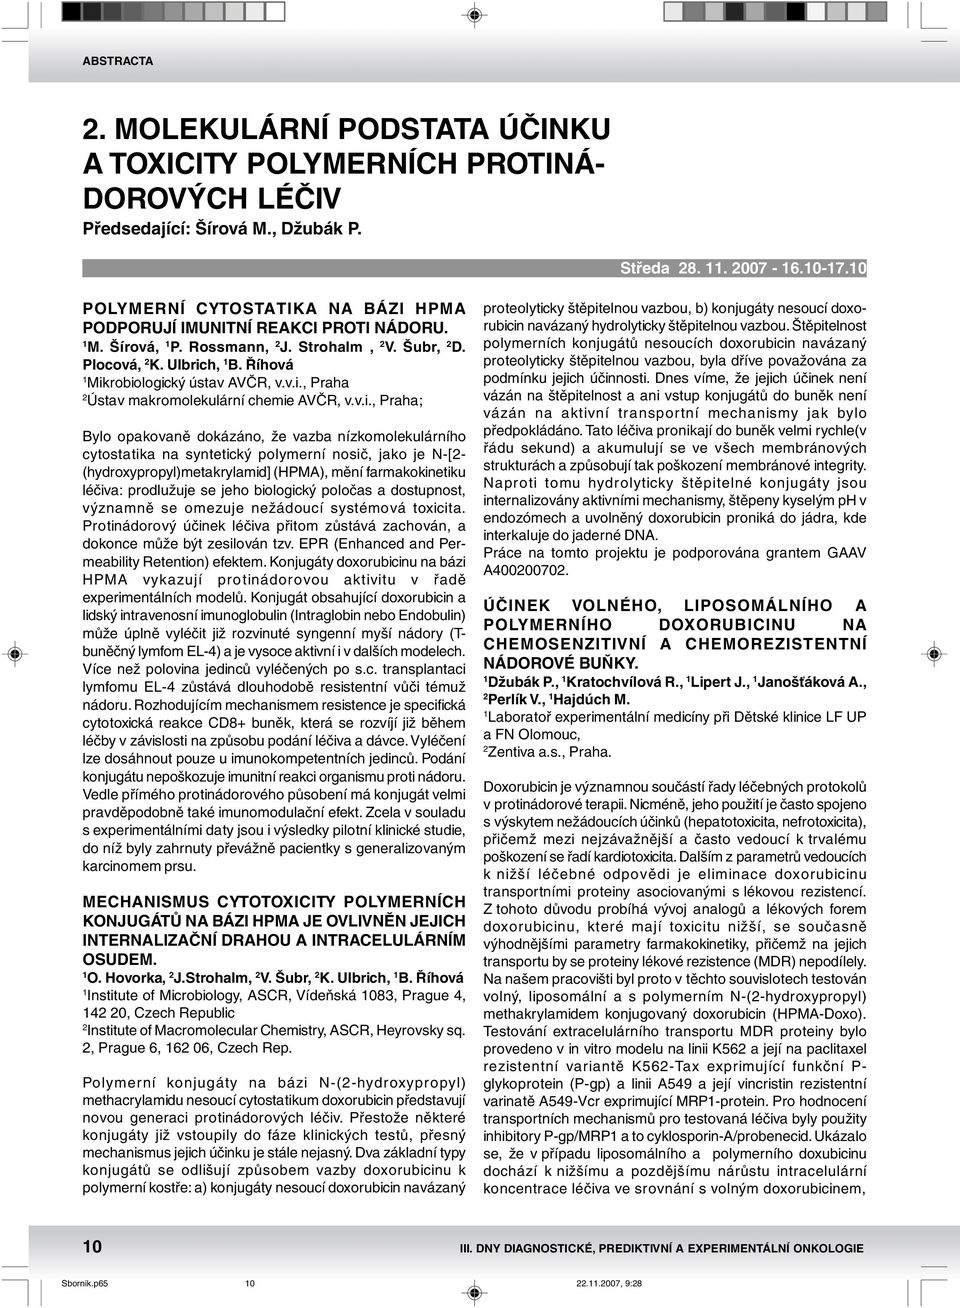 v.i., Praha; Bylo opakovaně dokázáno, že vazba nízkomolekulárního cytostatika na syntetický polymerní nosič, jako je N-[- (hydroxypropyl)metakrylamid] (HPMA), mění farmakokinetiku léčiva: prodlužuje